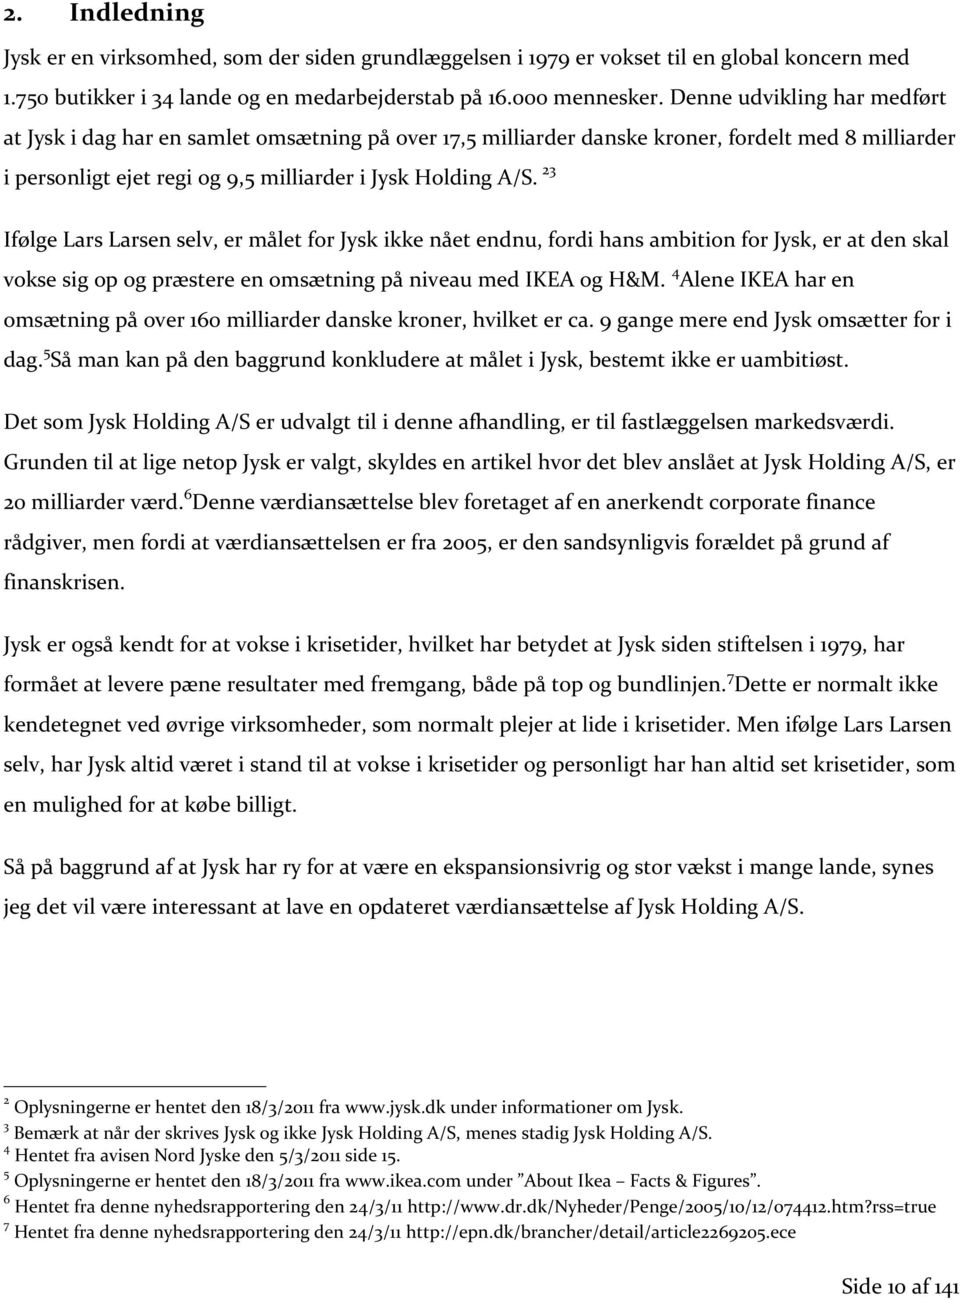 23 Ifølge Lars Larsen selv, er målet for Jysk ikke nået endnu, fordi hans ambition for Jysk, er at den skal vokse sig op og præstere en omsætning på niveau med IKEA og H&M.